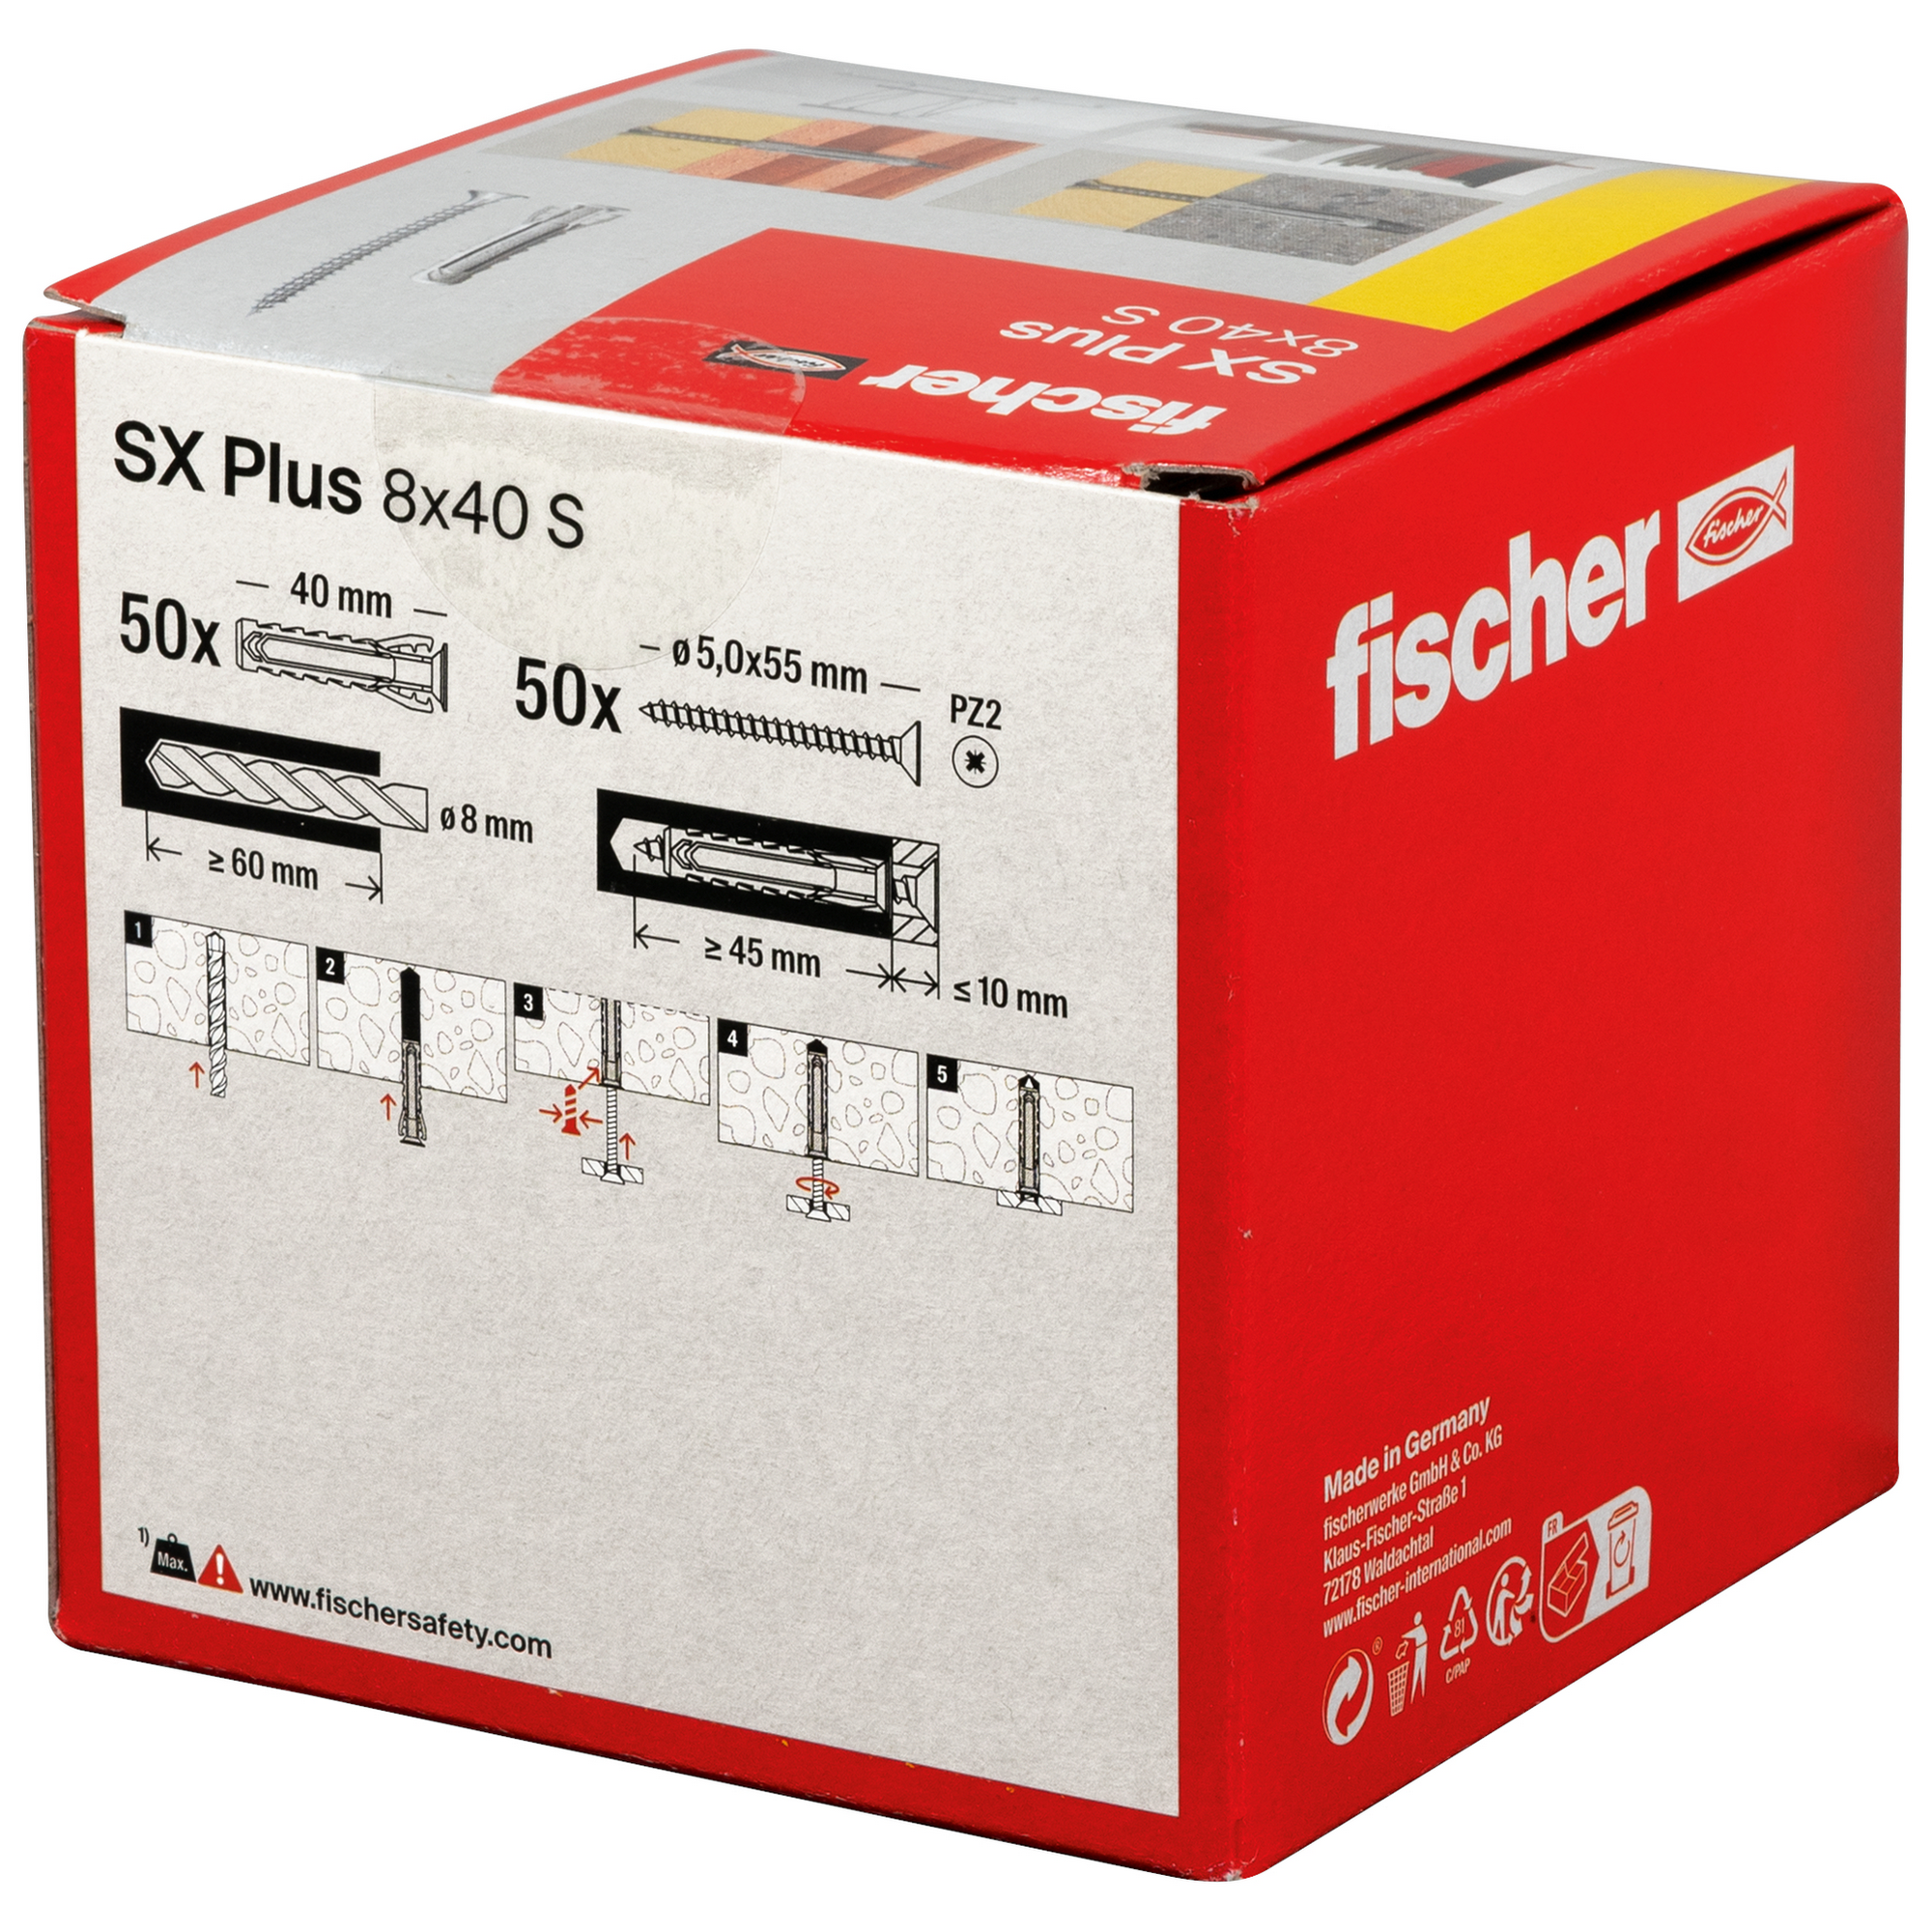 Spreizdübel-Set 'SX Plus' Ø 8 x 40 mm S mit Schraube, 50-teilig + product picture